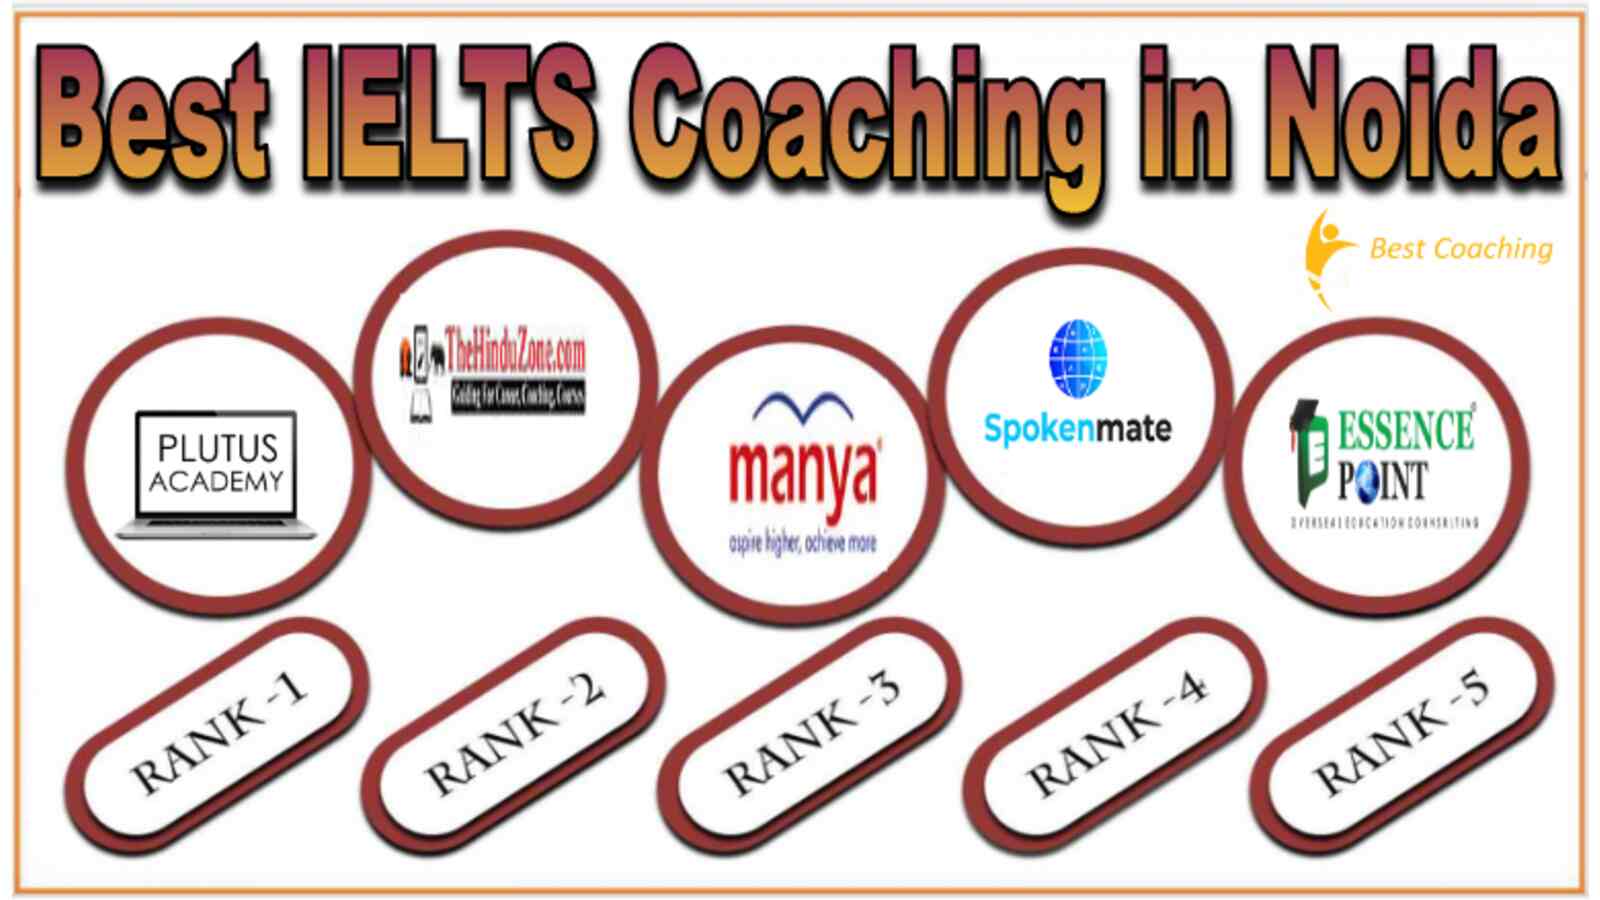 Best IELTS Coaching in Noida